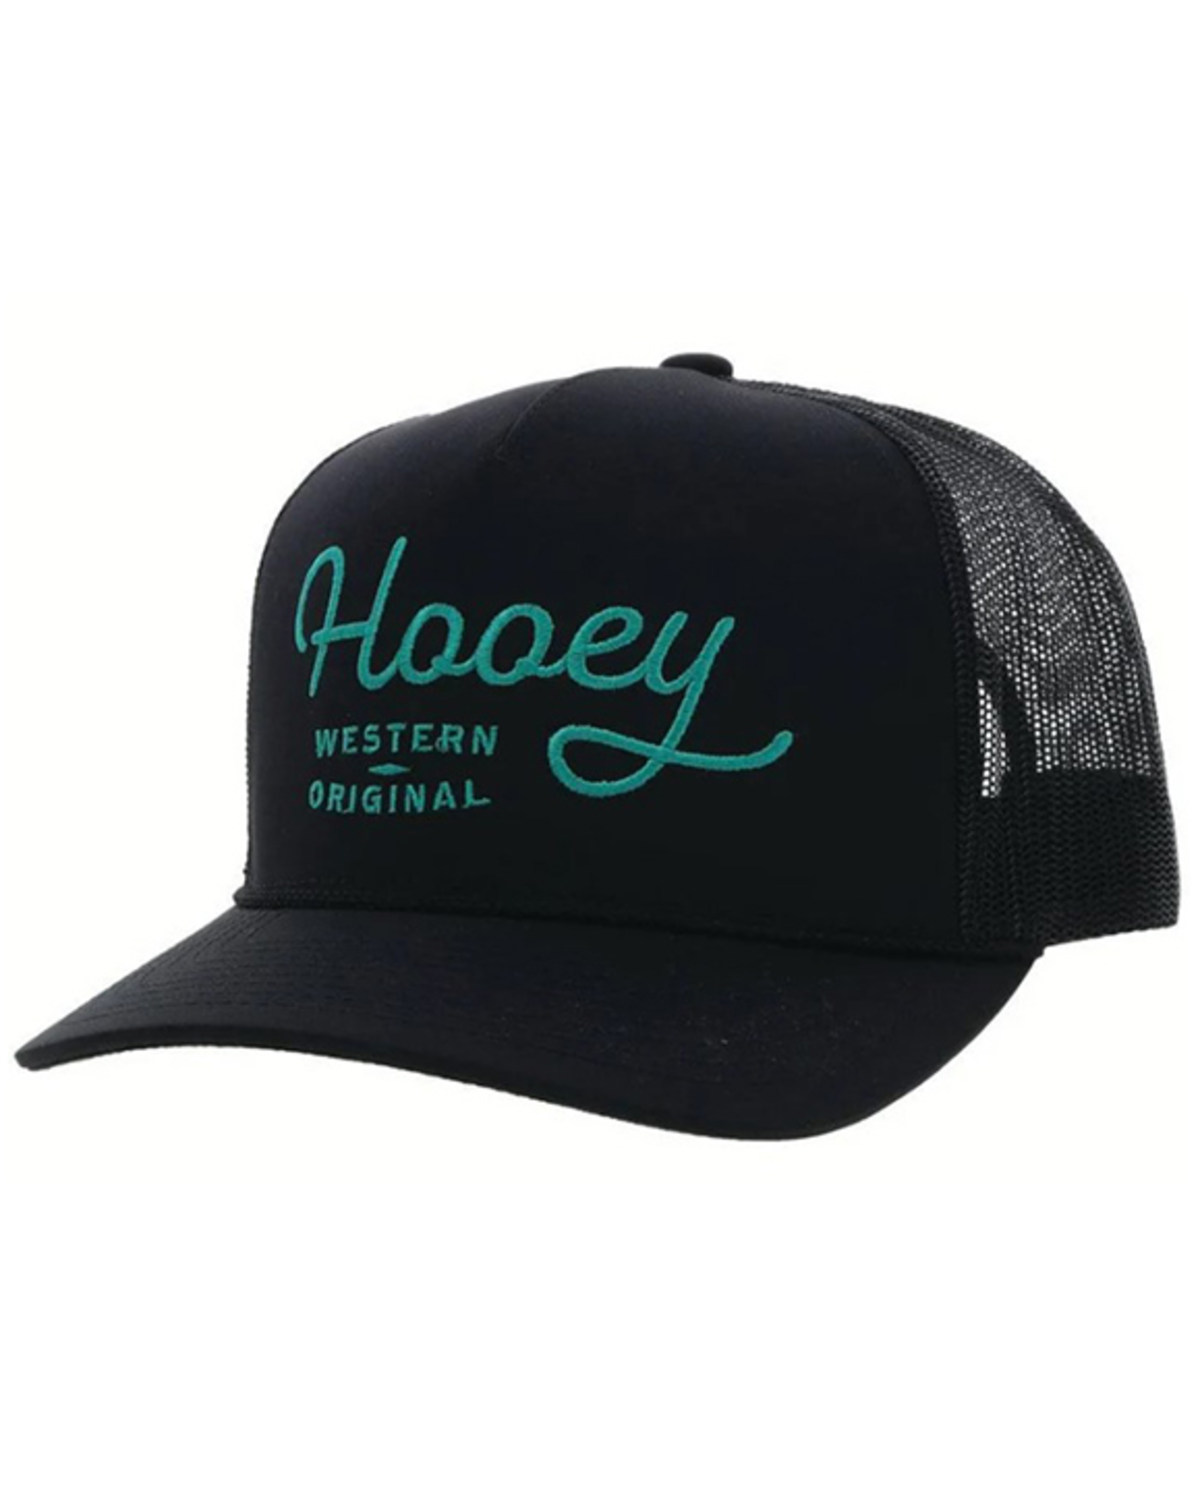 Hooey Men's OG Mesh Trucker Cap